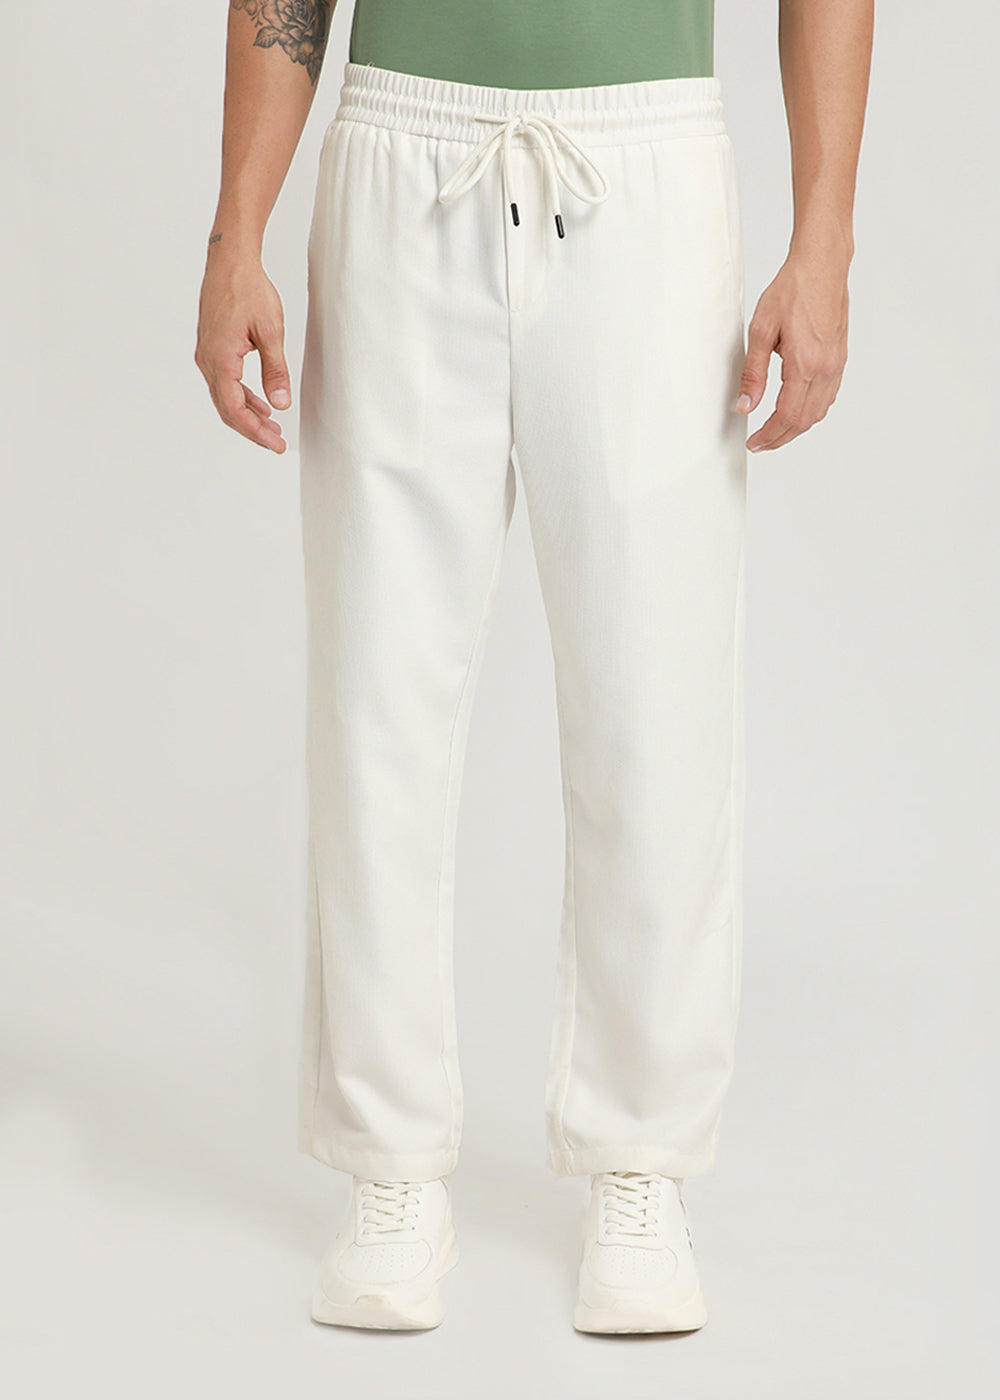 White Pin Stripe Corduroy Pant